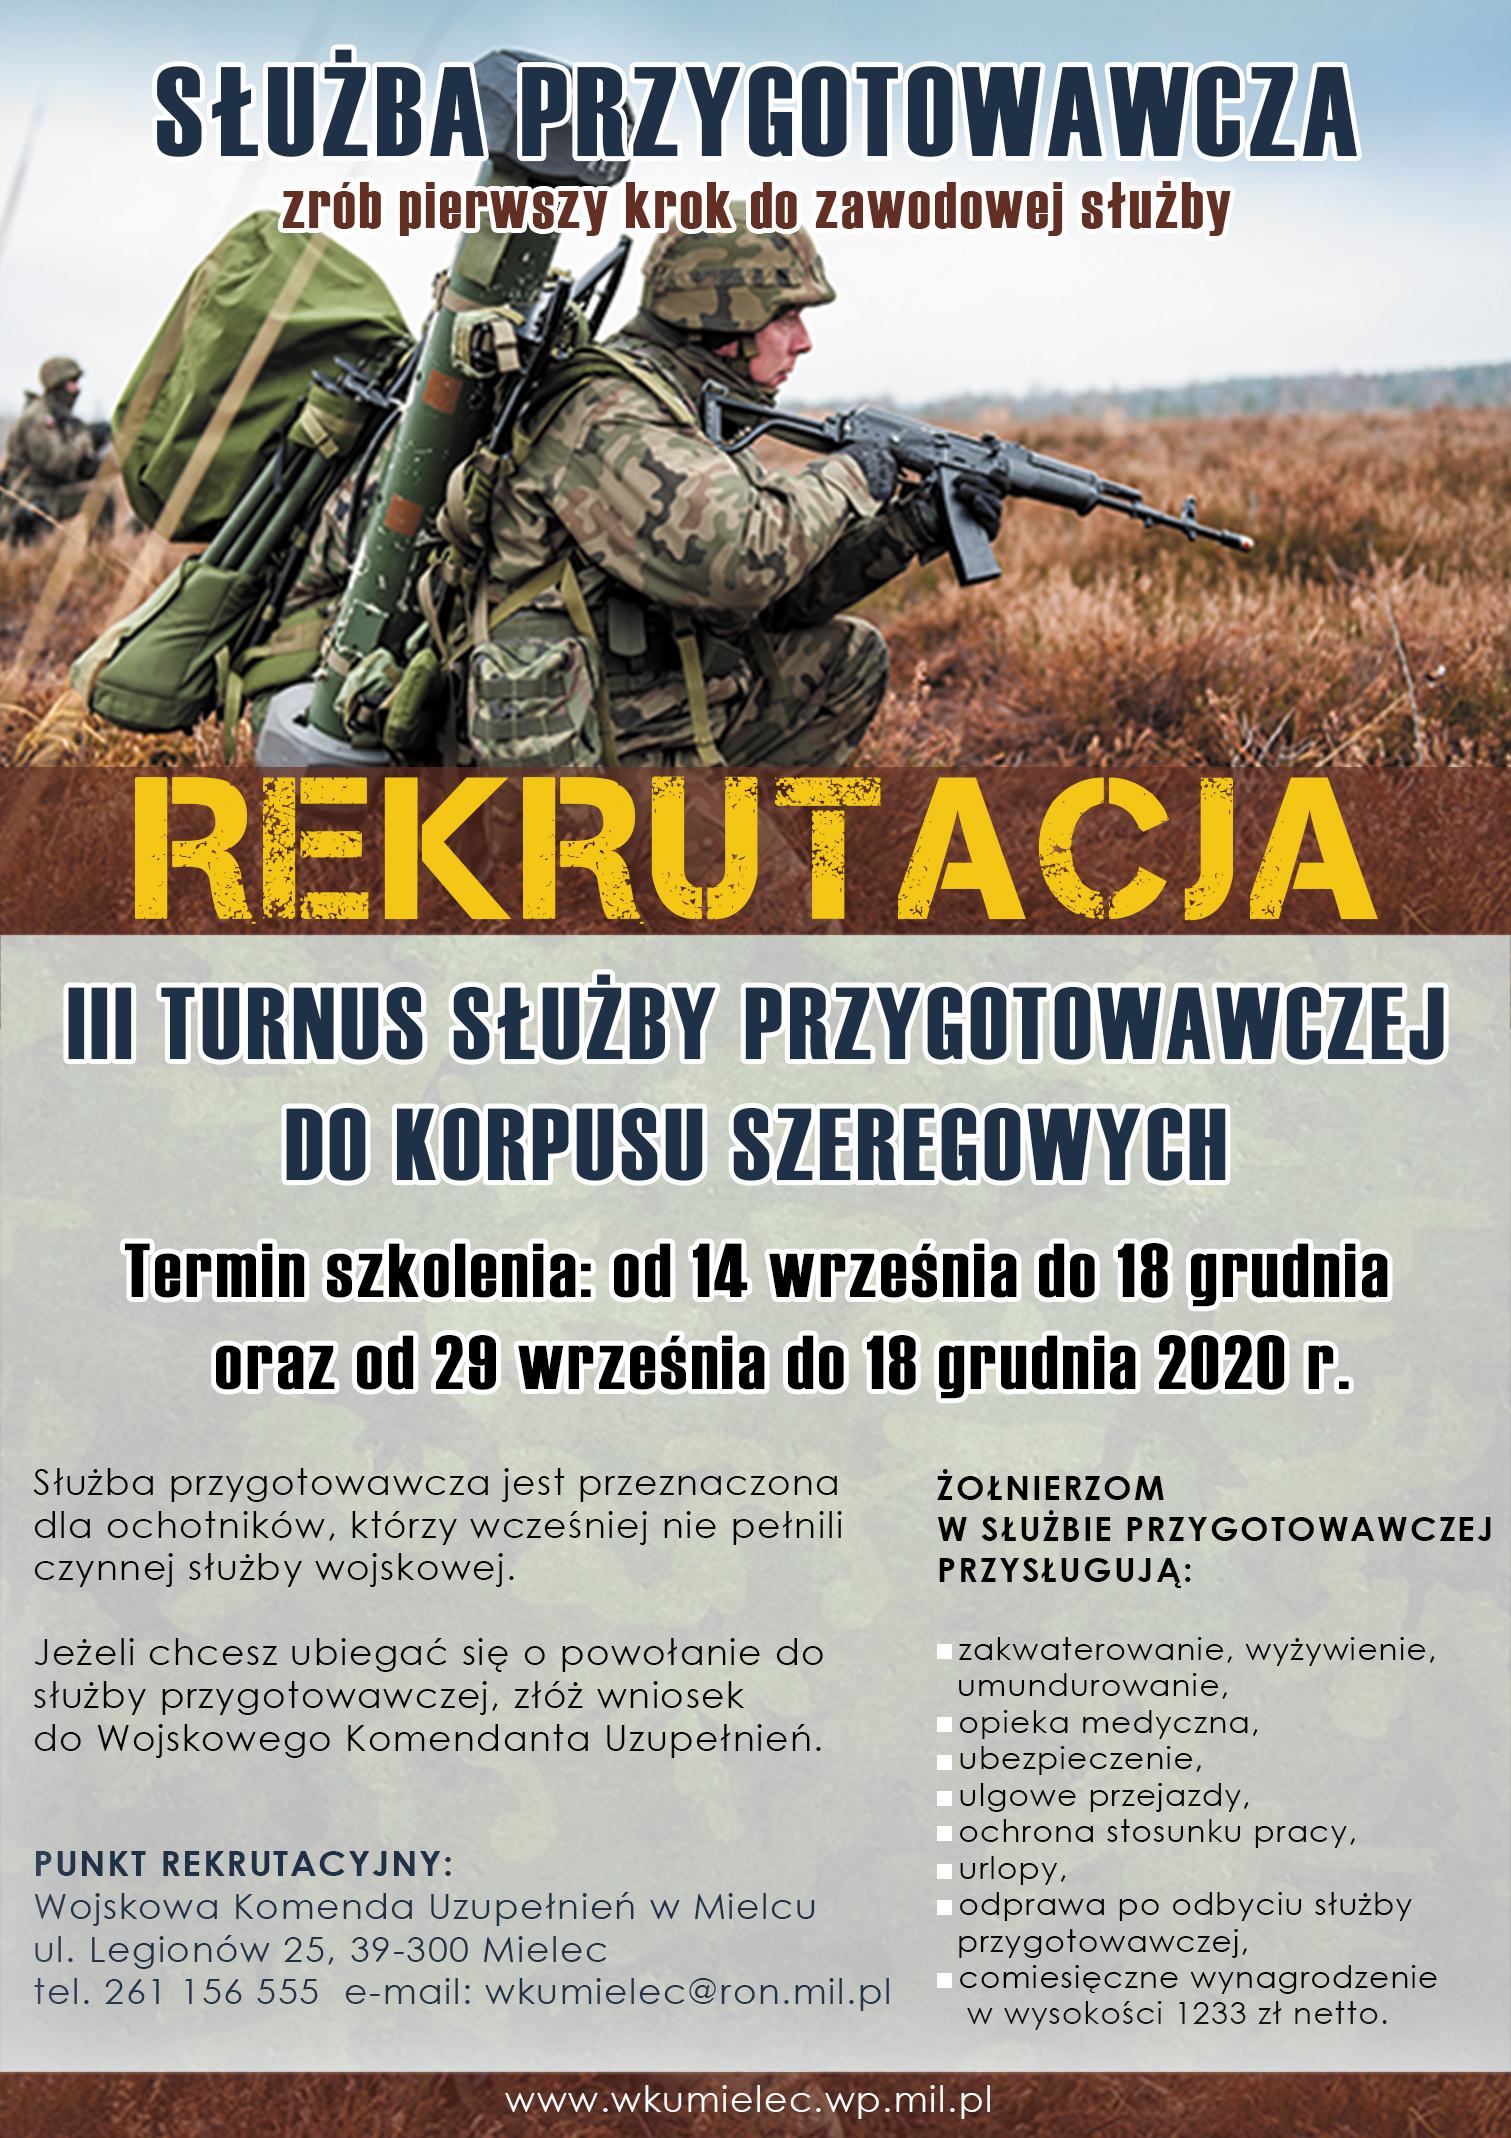 Plakat informujący o służbie przygotowawczej organizowanej przez WKU MIELEC